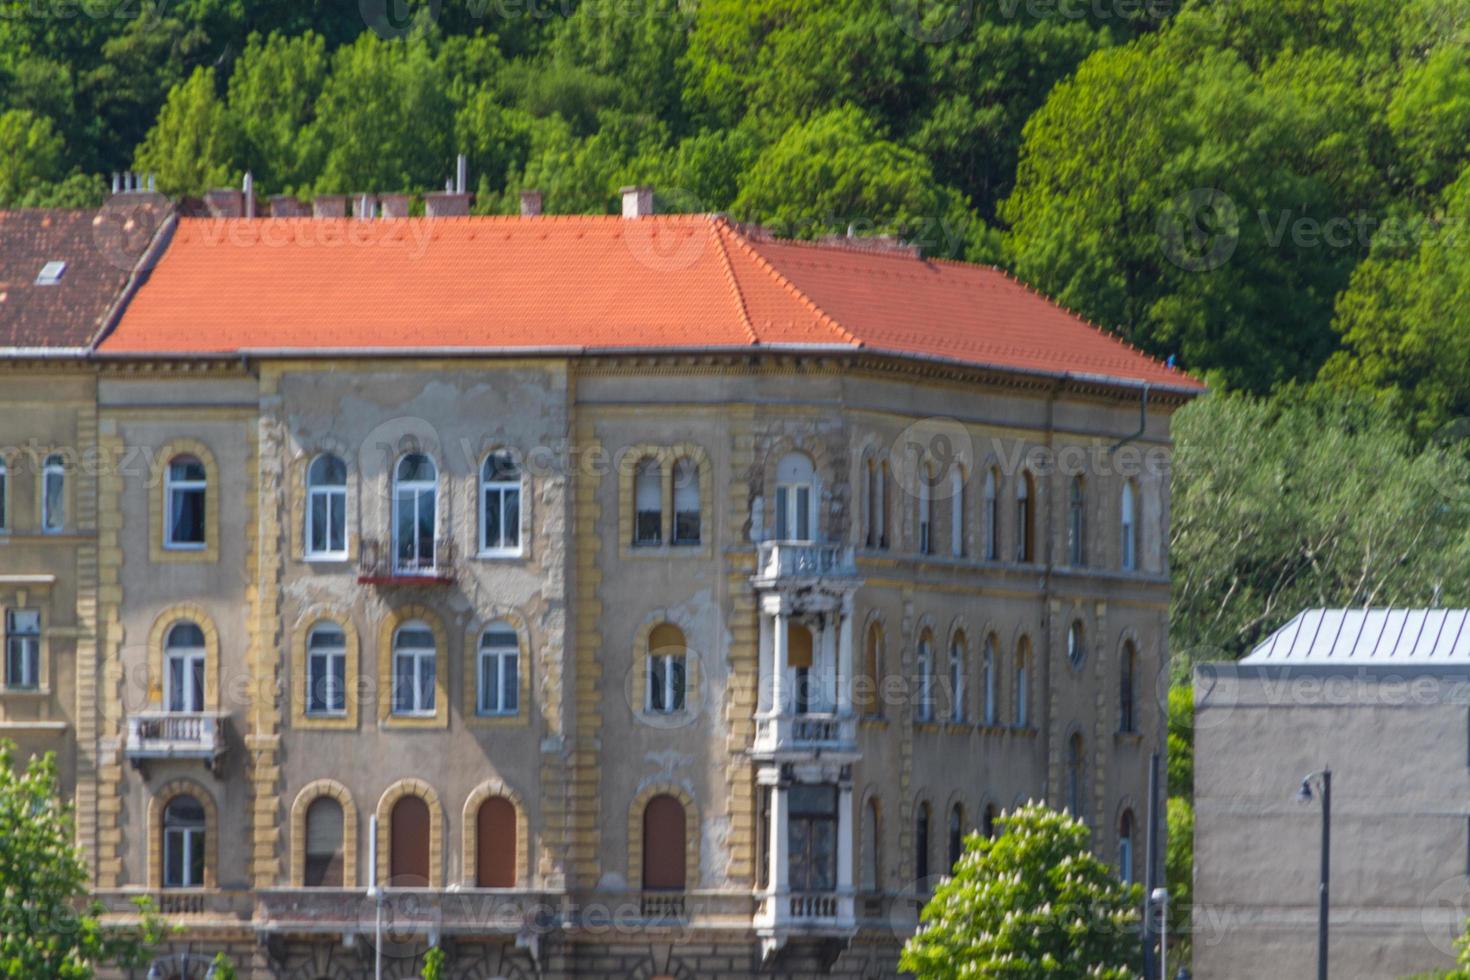 edificios típicos del siglo XIX en el distrito del castillo de buda de budapest foto